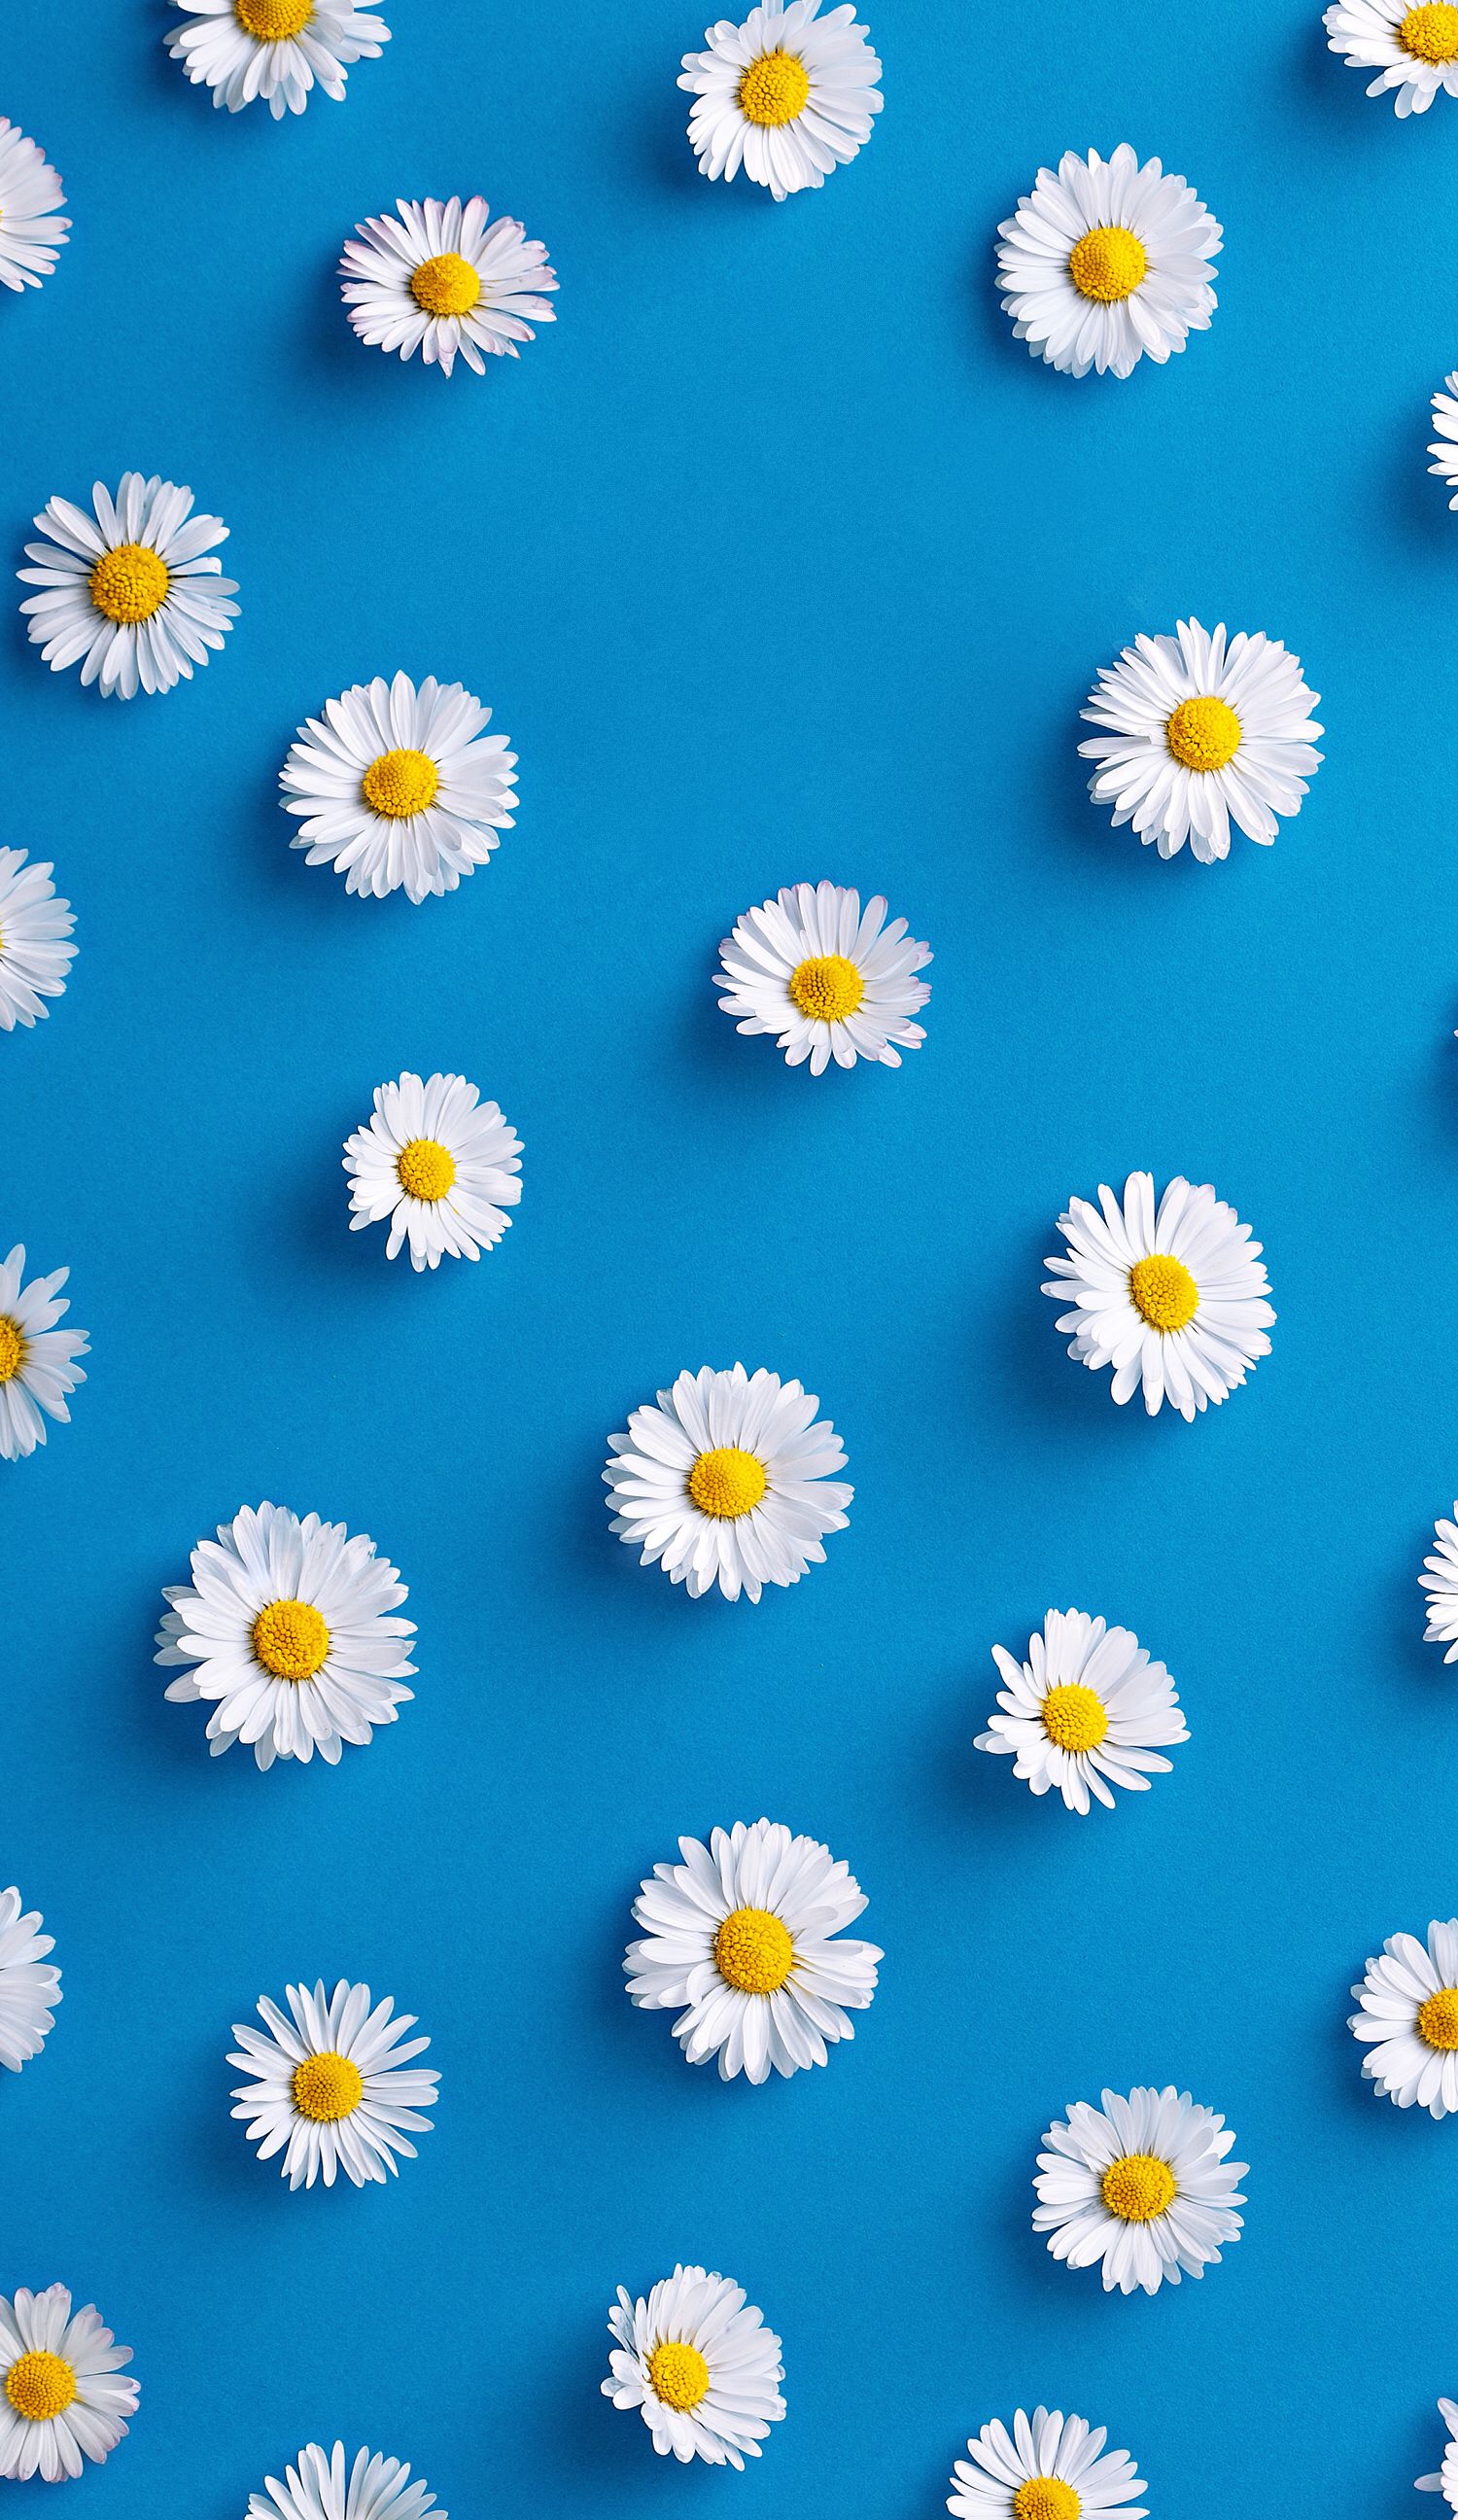 Hãy cùng tự chăm sóc cho tâm hồn của bạn bằng những bông hoa xanh đẹp tuyệt vời và một chiếc điện thoại iPhone đầy màu sắc. Hãy lựa chọn hình nền hoa xanh này để tô điểm cho chiếc điện thoại của bạn thêm phần tươi sáng nhé!